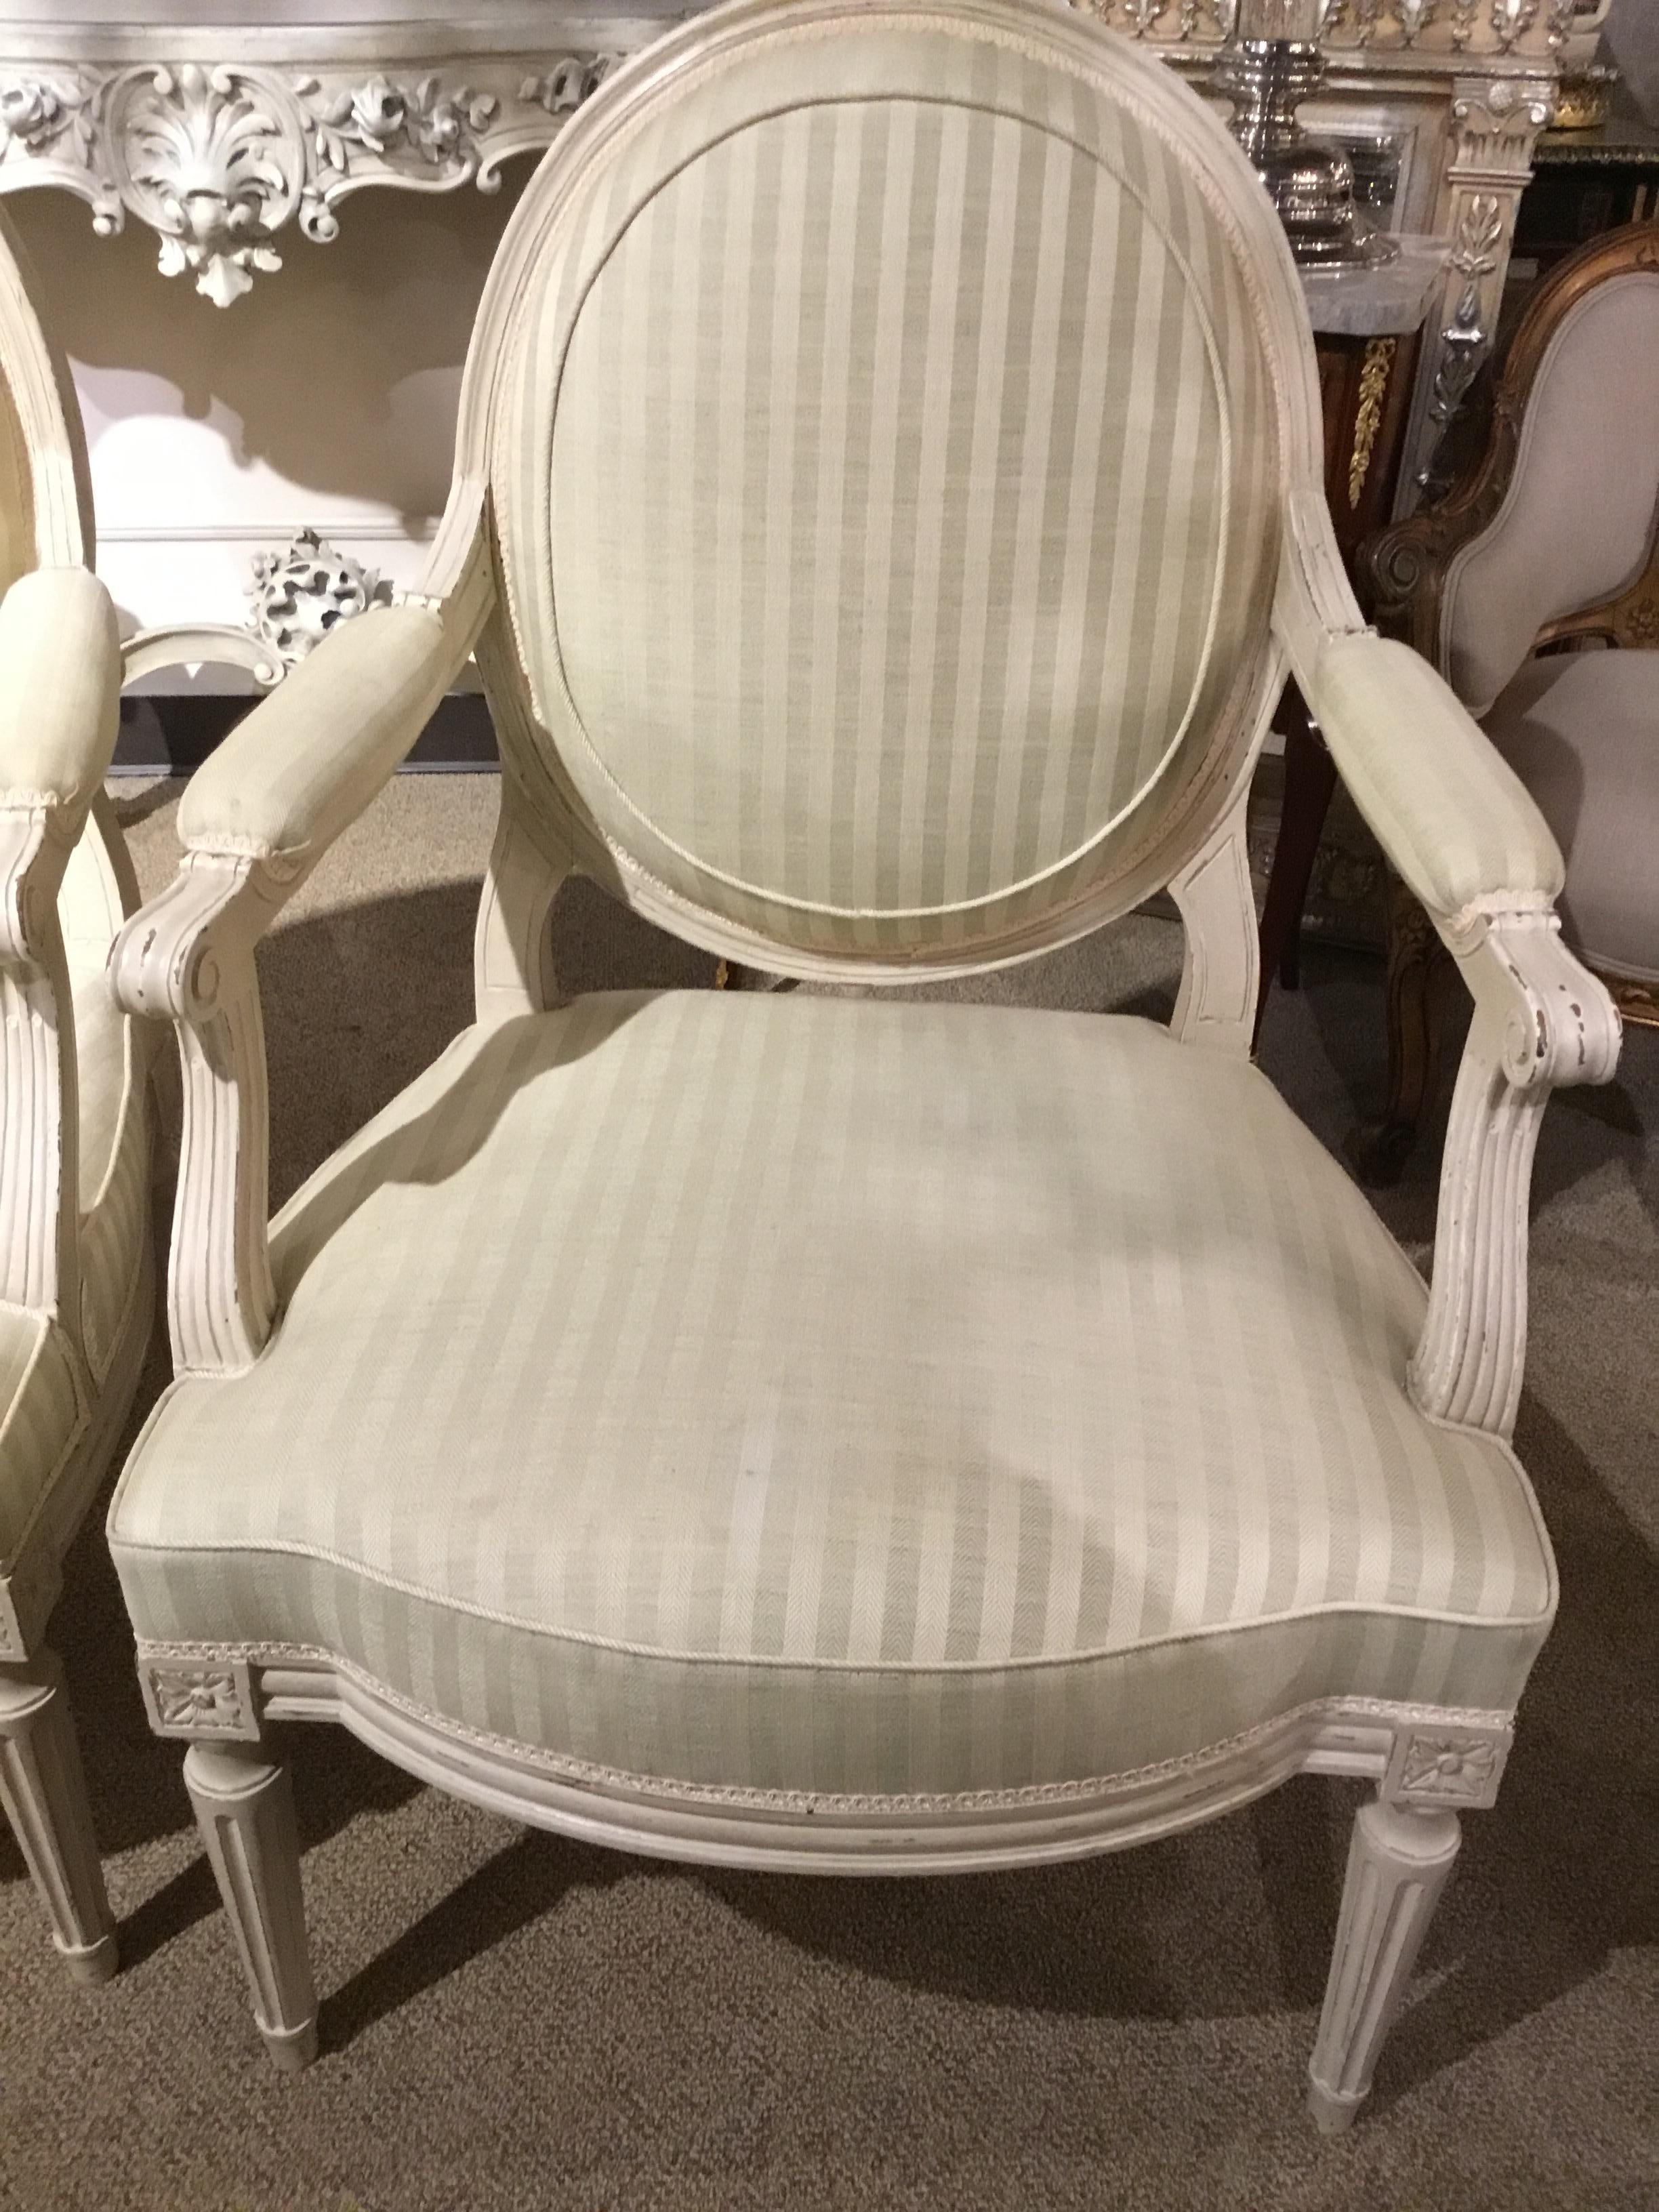 Weiß lackierte Stühle im Louis XVI-Stil mit ovalem Rücken.
Weiß und cremefarben gestreifter Stoff. Schilfrohr-Beine
Bemalt mit einer künstlichen, künstlerischen Verzierung.